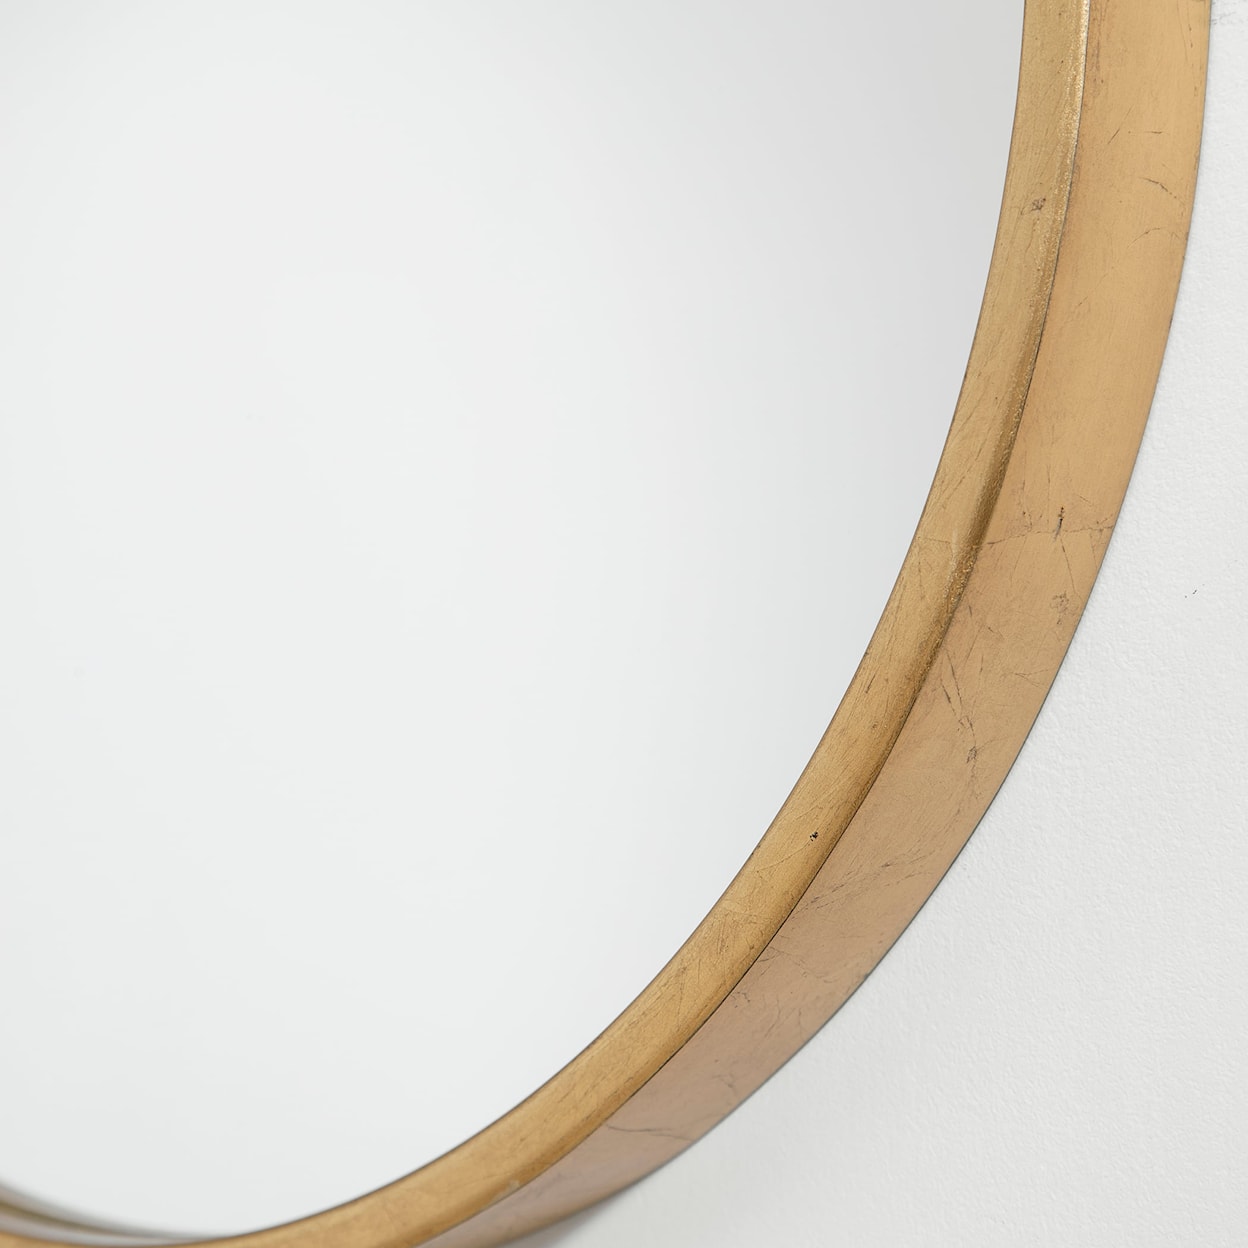 Uttermost Mirrors - Oval Varina Minimalist Gold Oval Mirror